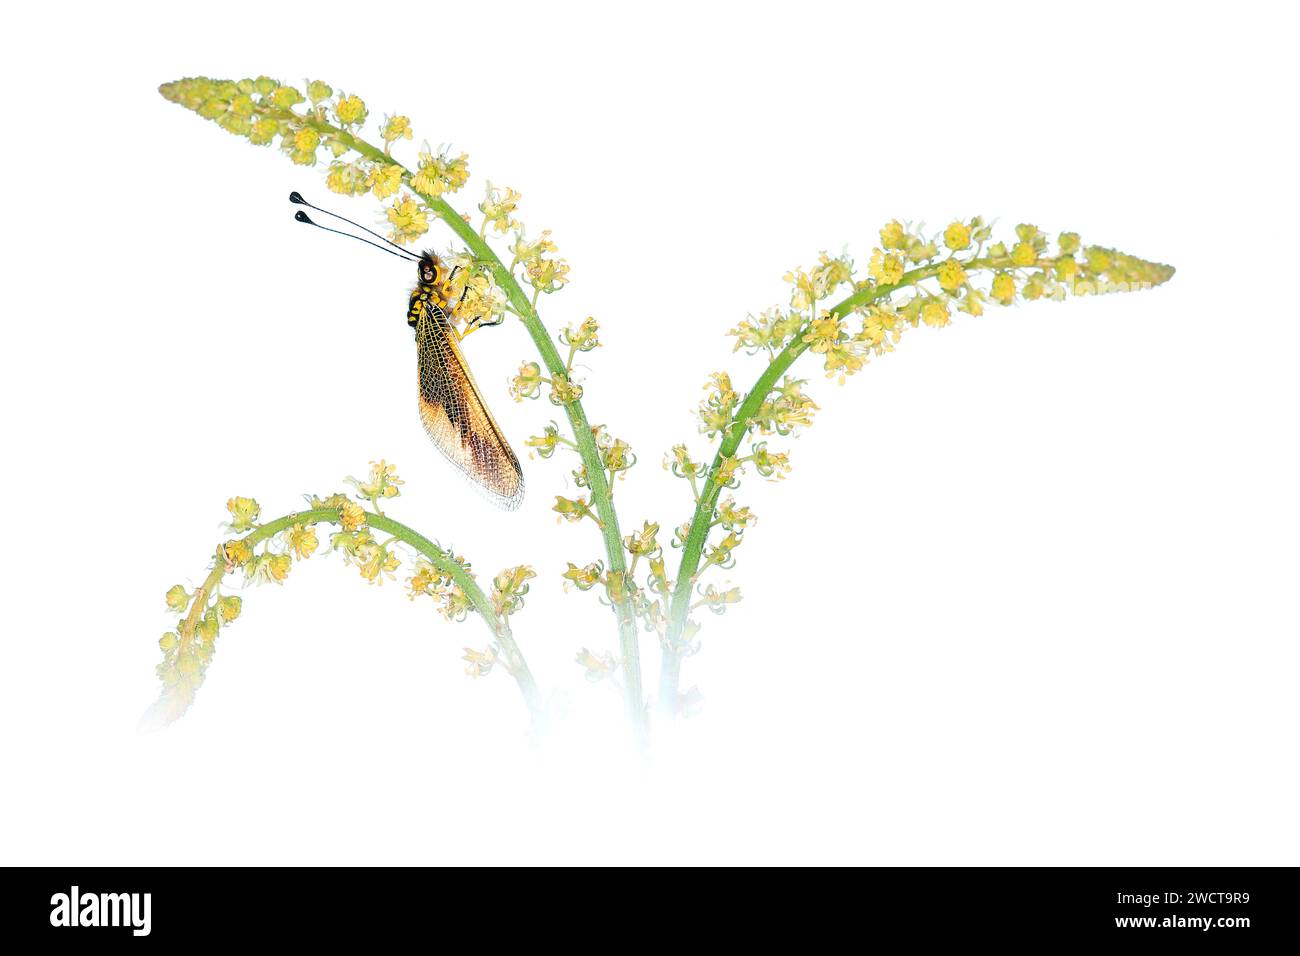 Ein zarter Schmetterling mit verzierten Flügeln liegt auf einem blühenden Zweig auf, der vor reinweißem Hintergrund für einen klaren, minimalistischen Look präsentiert wird. Stockfoto